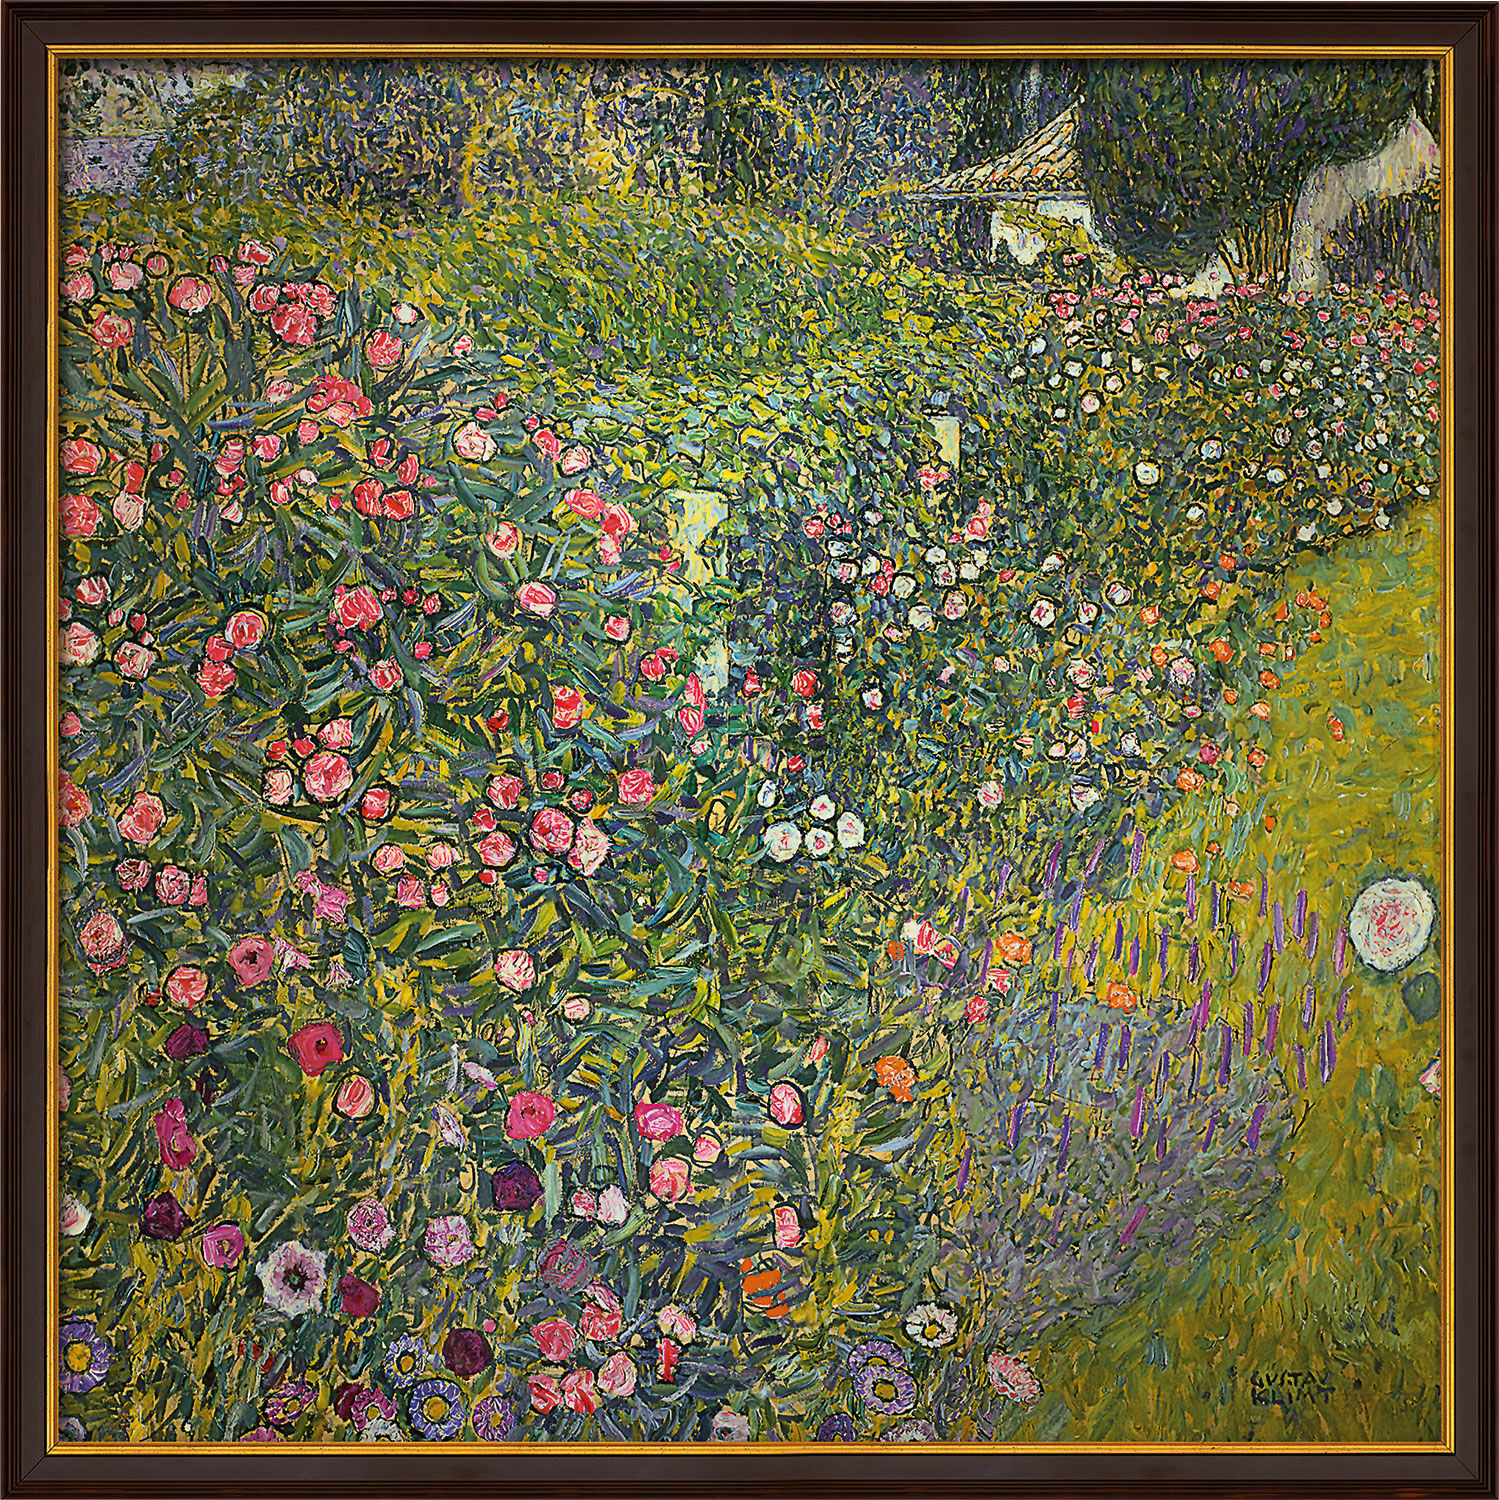 Beeld "Italiaans tuinlandschap" (1913), ingelijst von Gustav Klimt